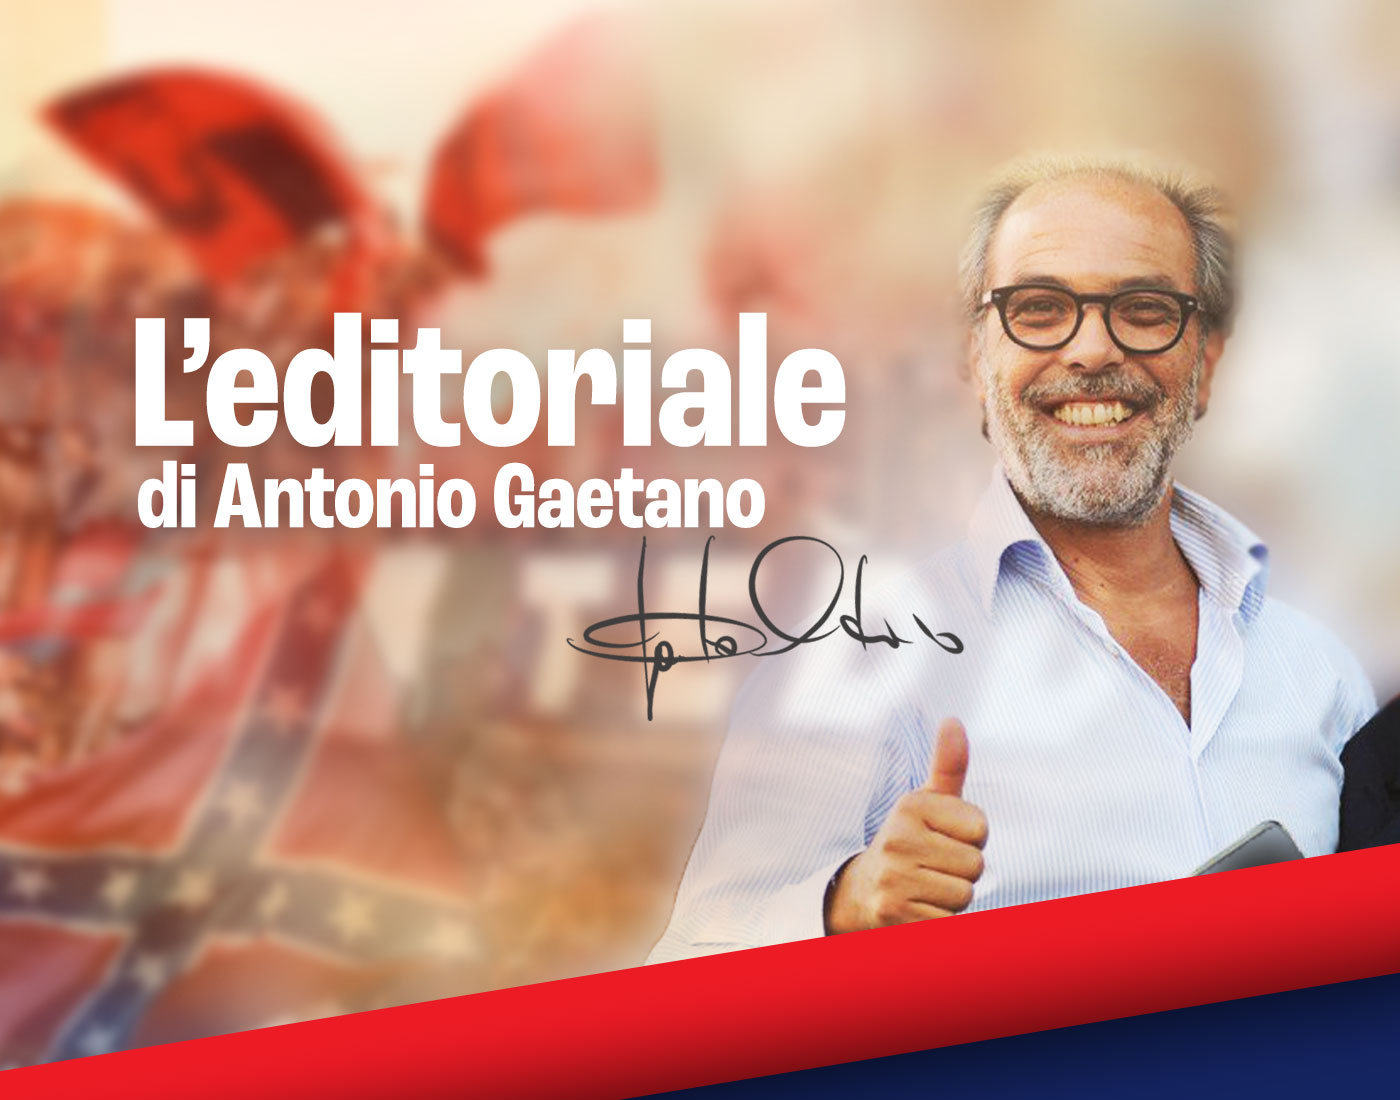 Editoriale – Banner – Antonio Gaetano